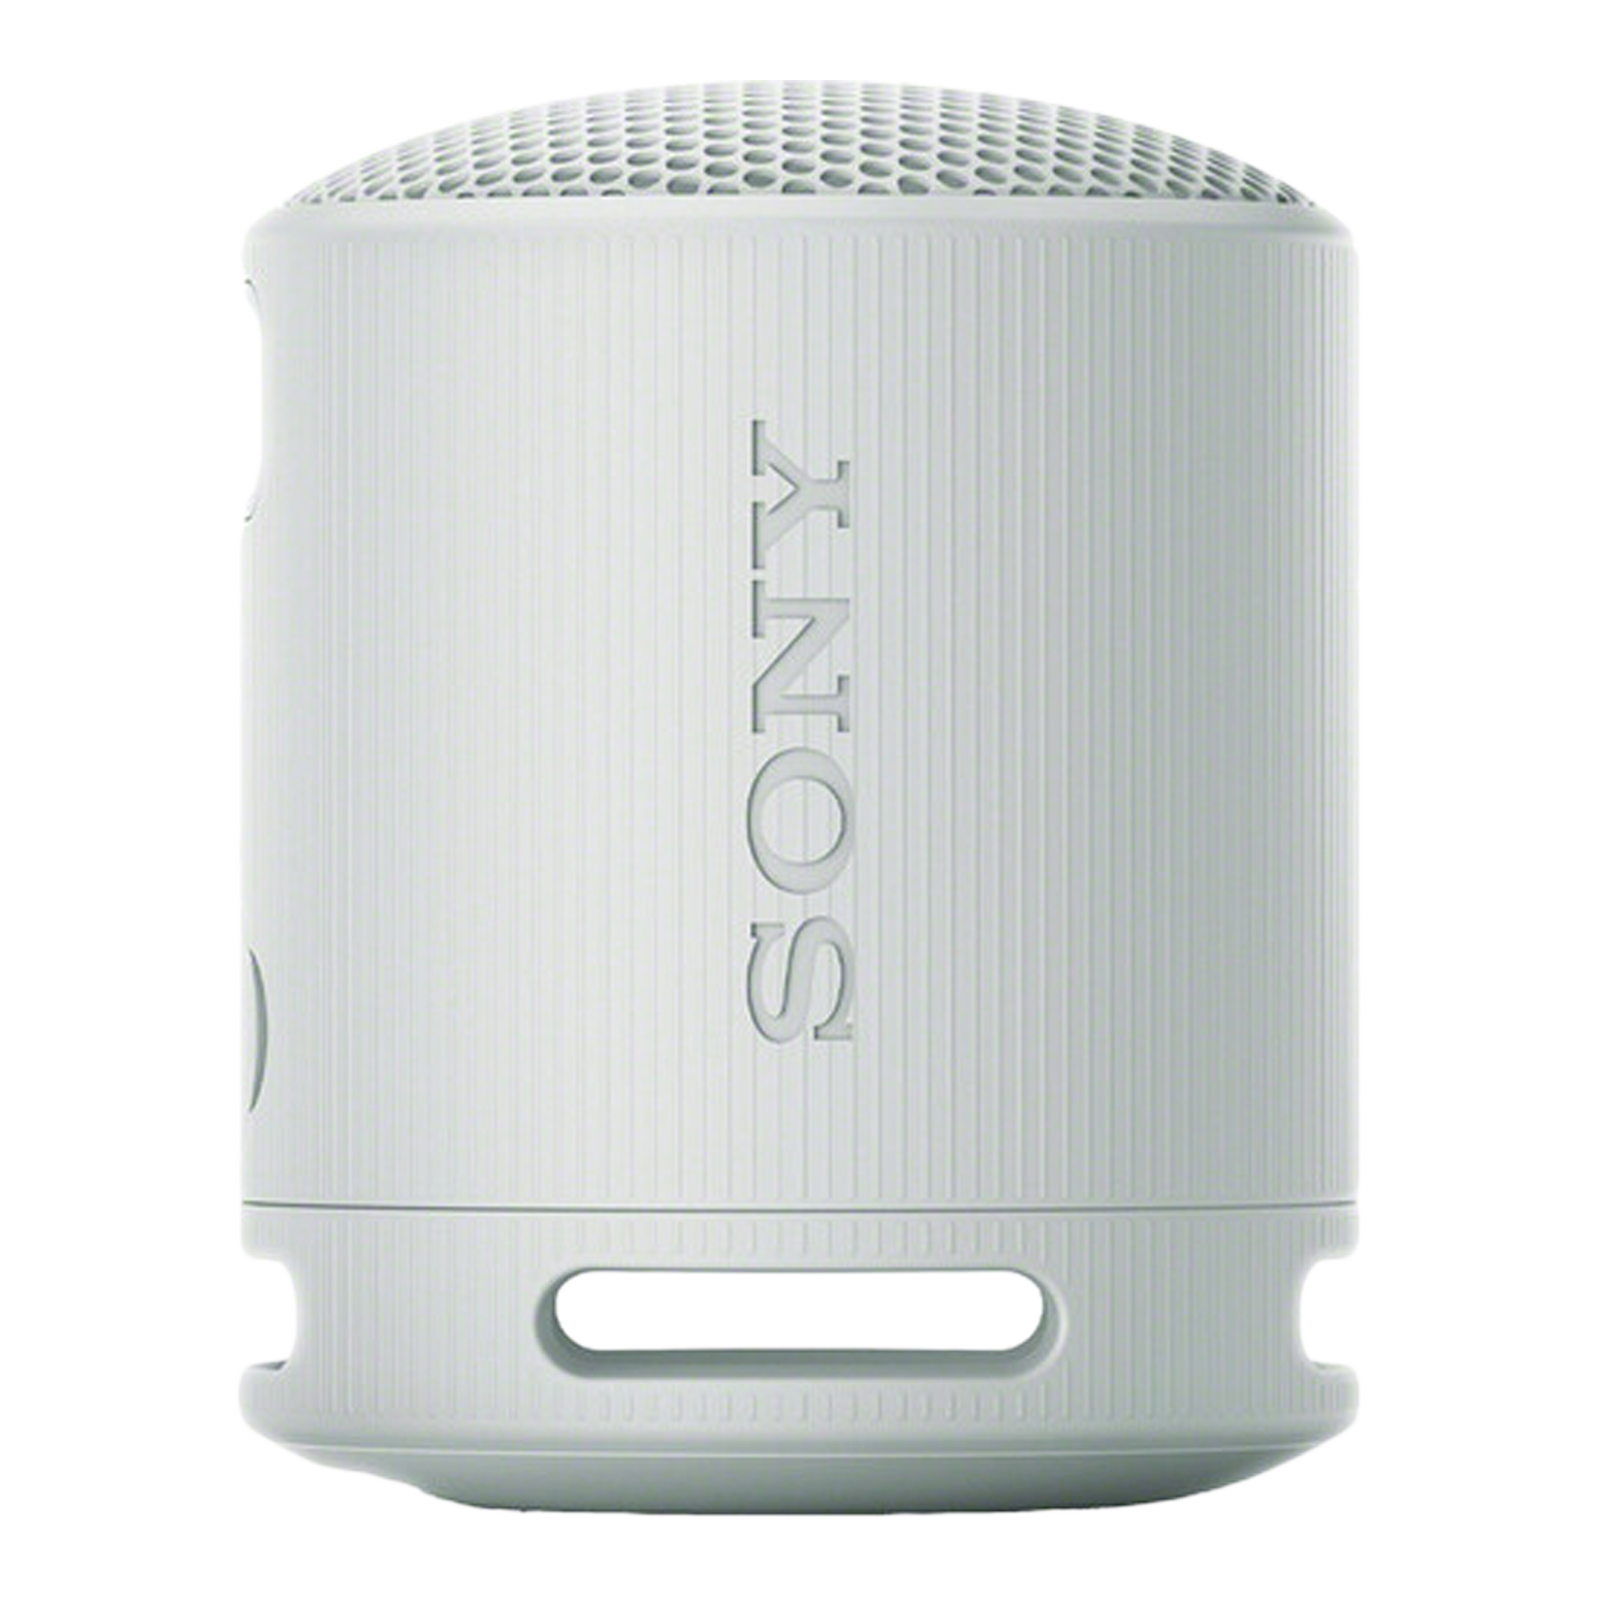 SONY SRS-XB100 2.5W Portable Bluetooth Speaker (IP67 Waterproof, 1.0 Channel, Light Grey)